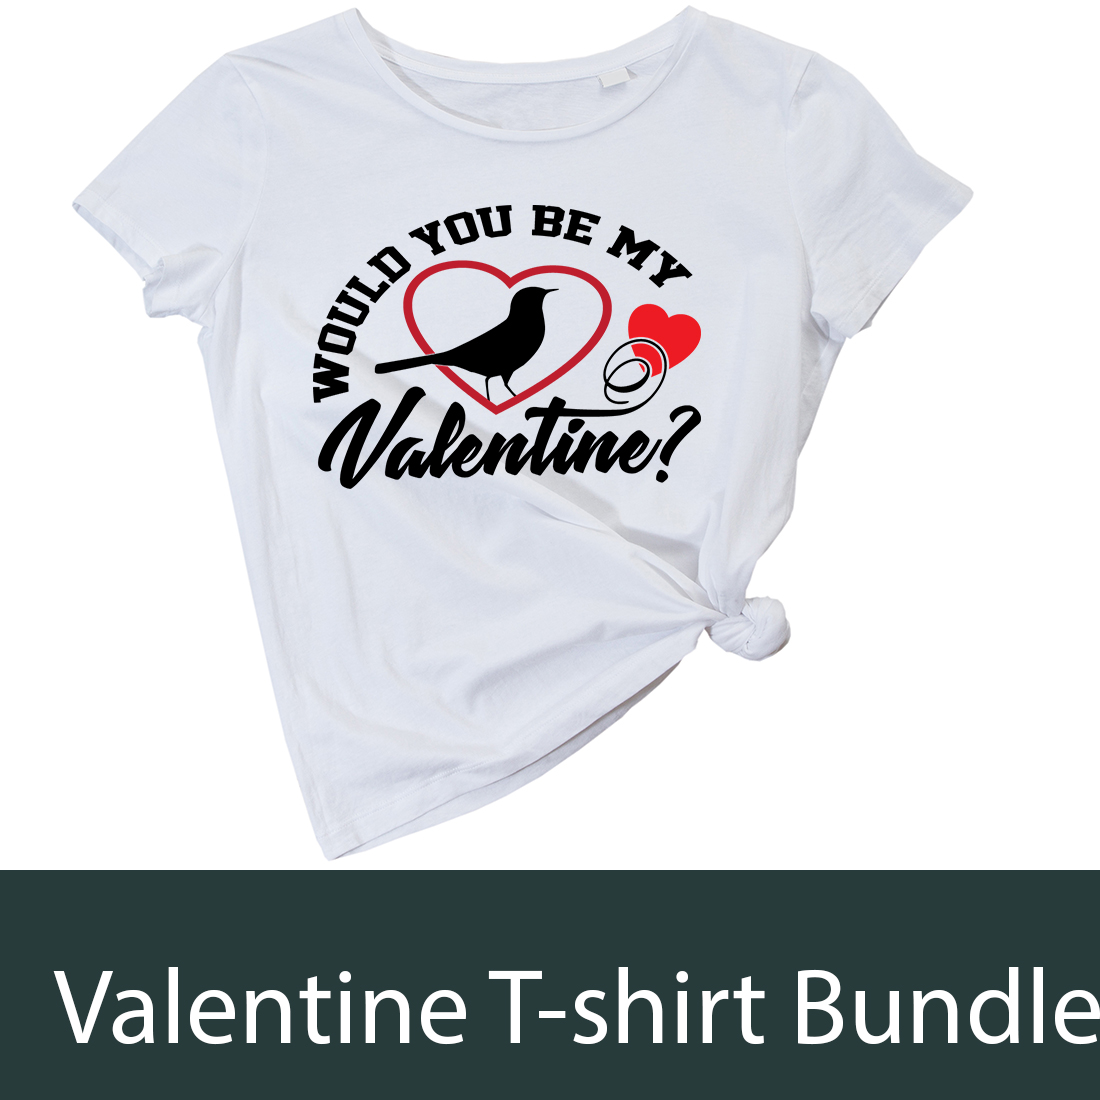 Valentine's T-shirt design bundle preview image.